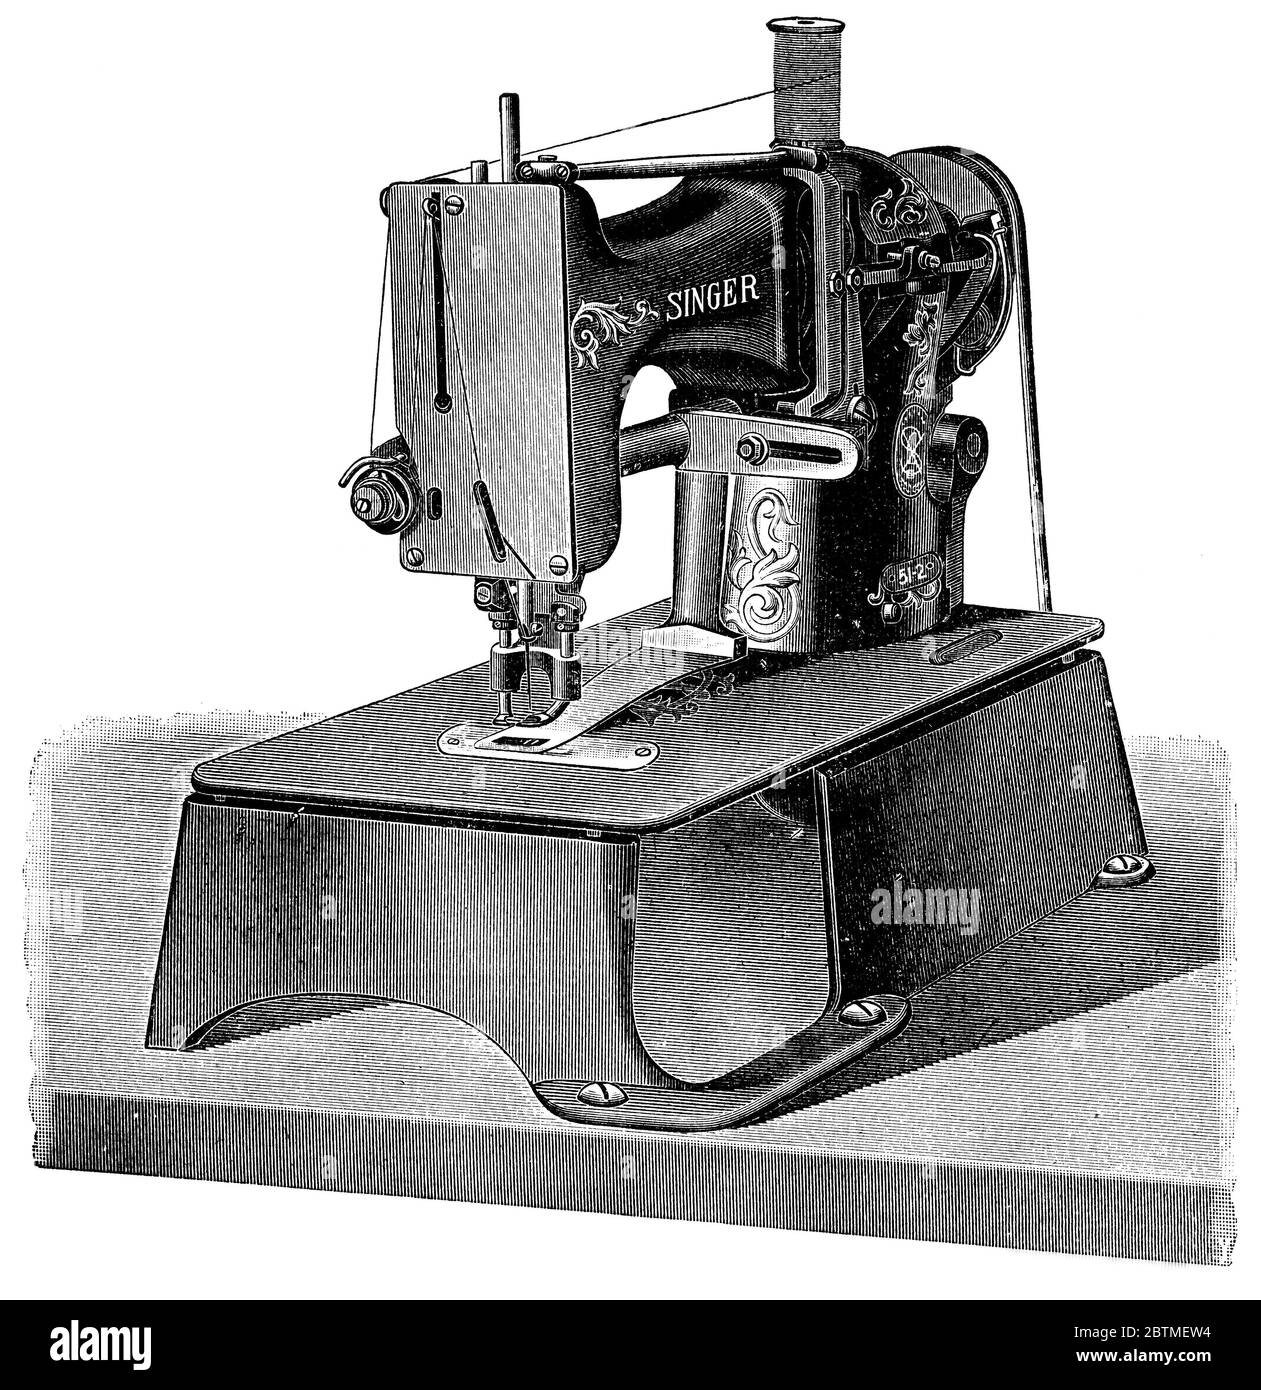 Machine à coudre à barres par Singer. Illustration du XIXe siècle. Fond blanc. Banque D'Images